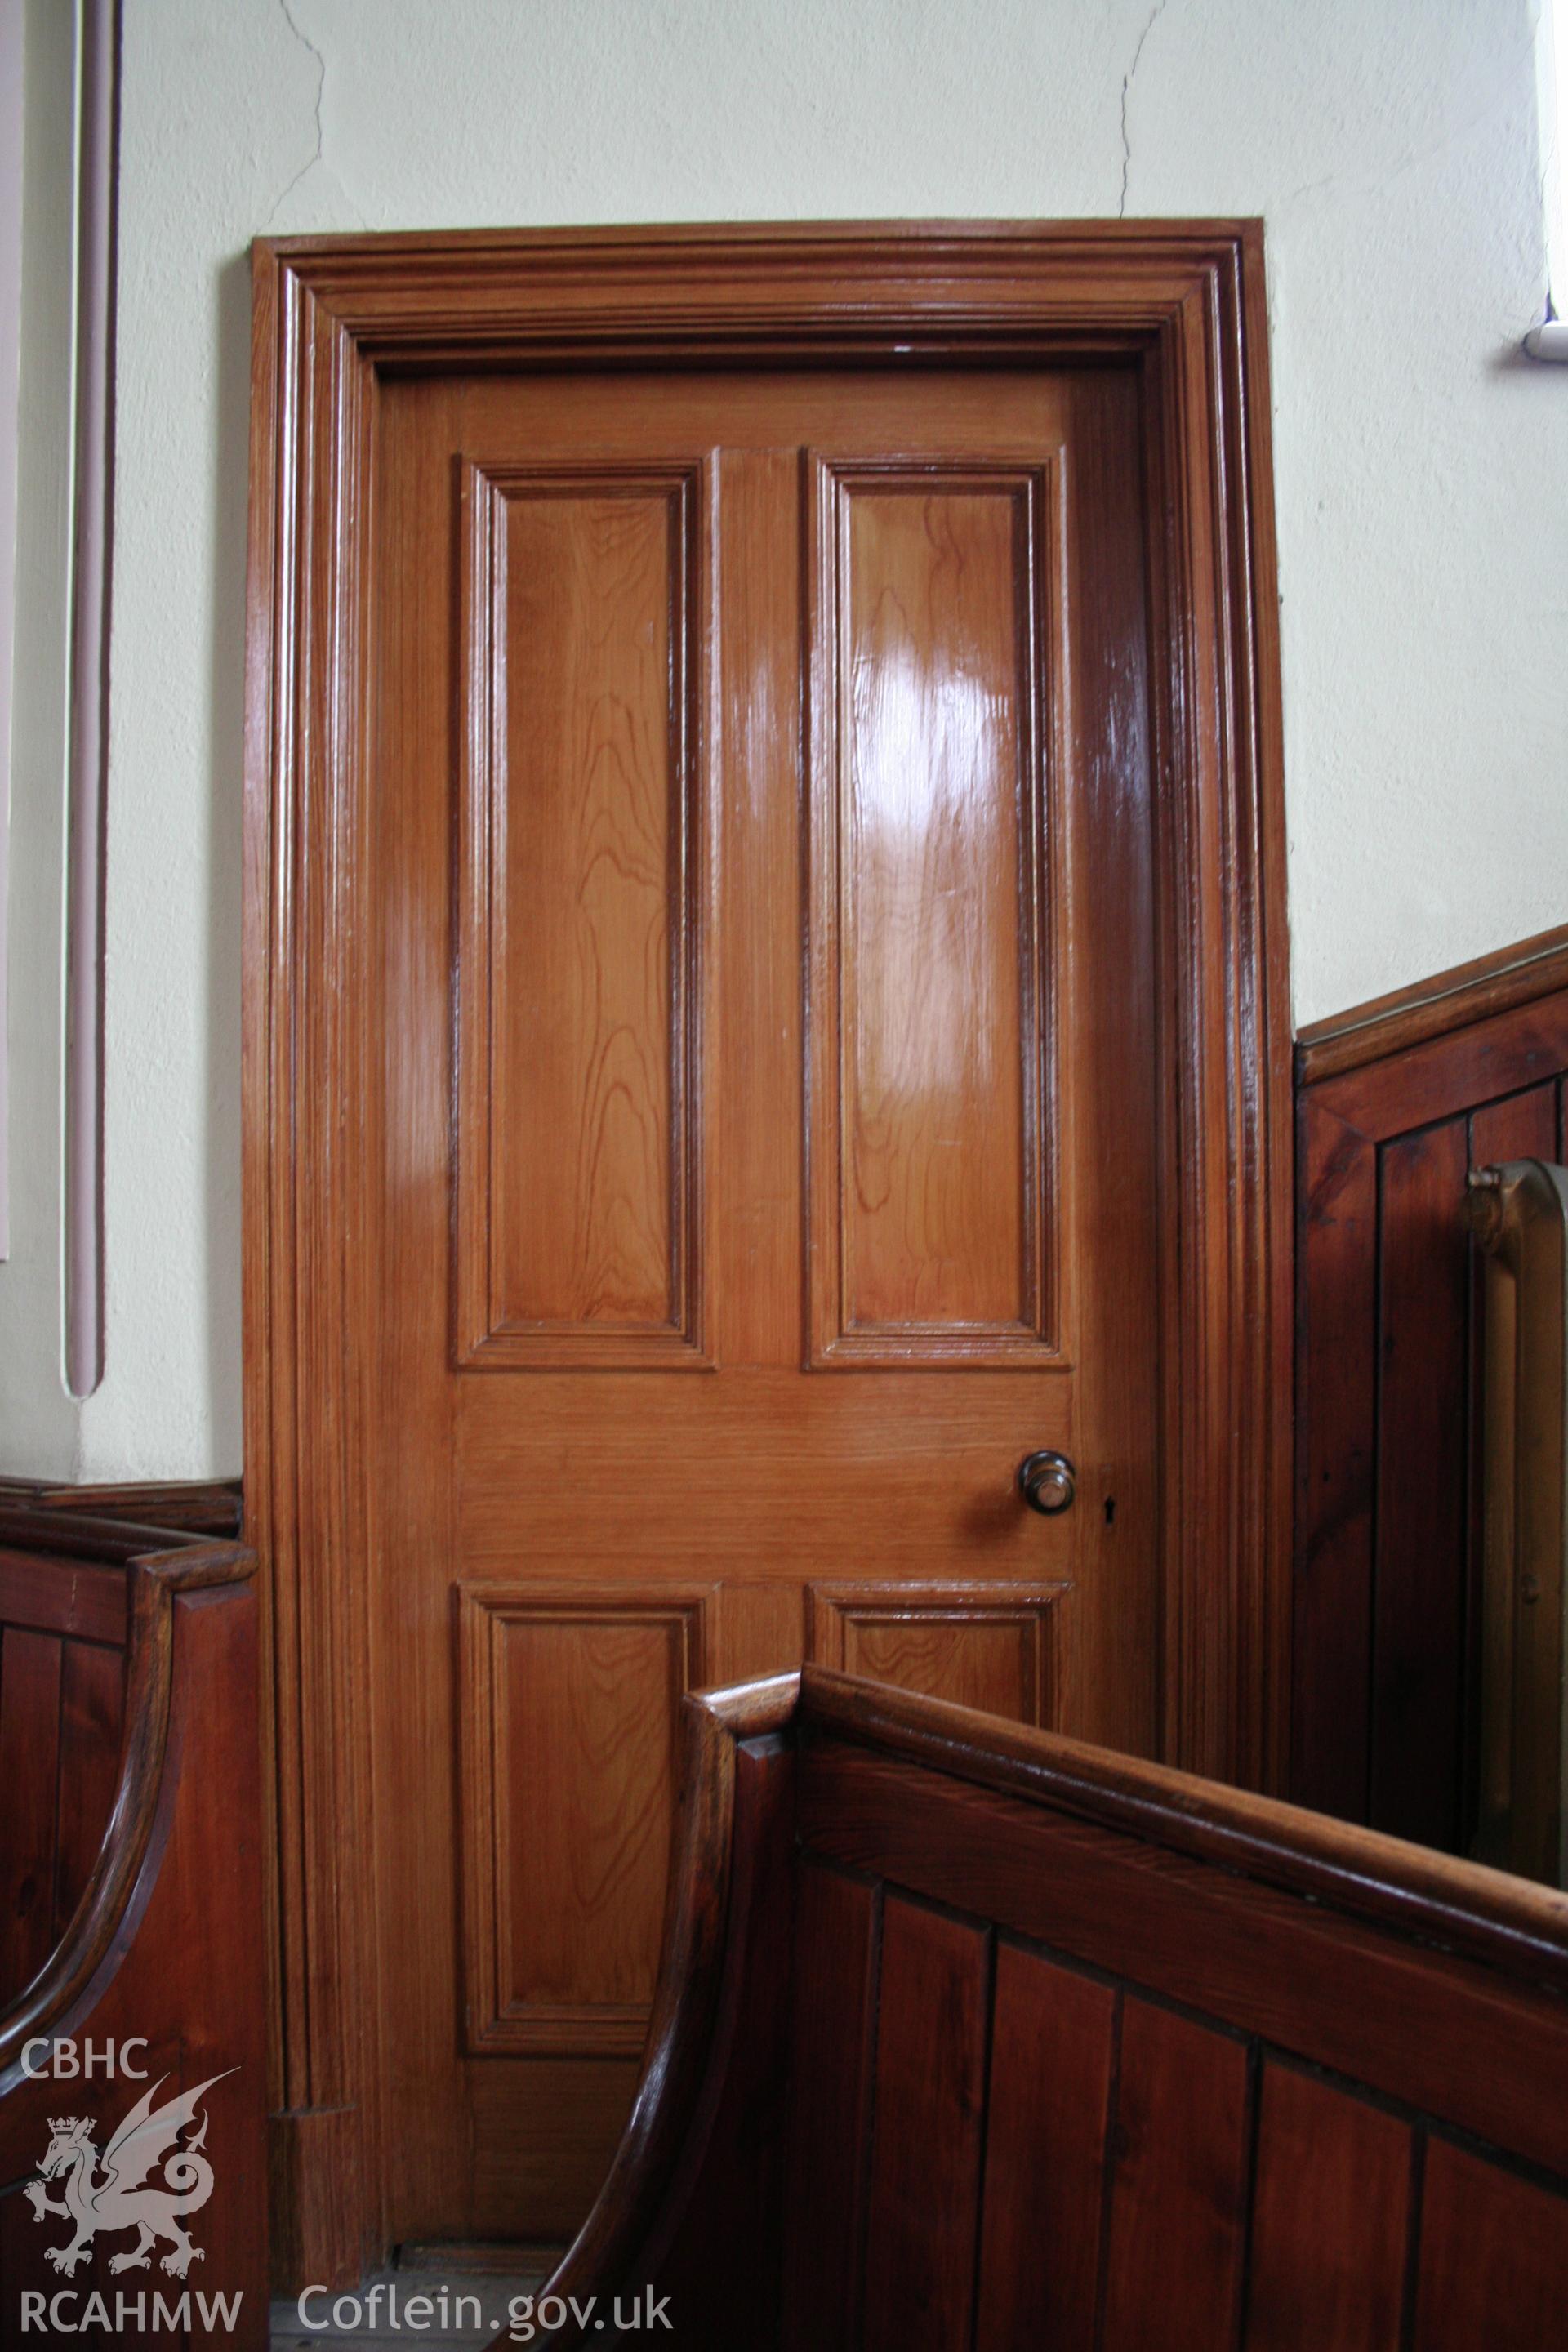 Moriah Chapel detail of door.